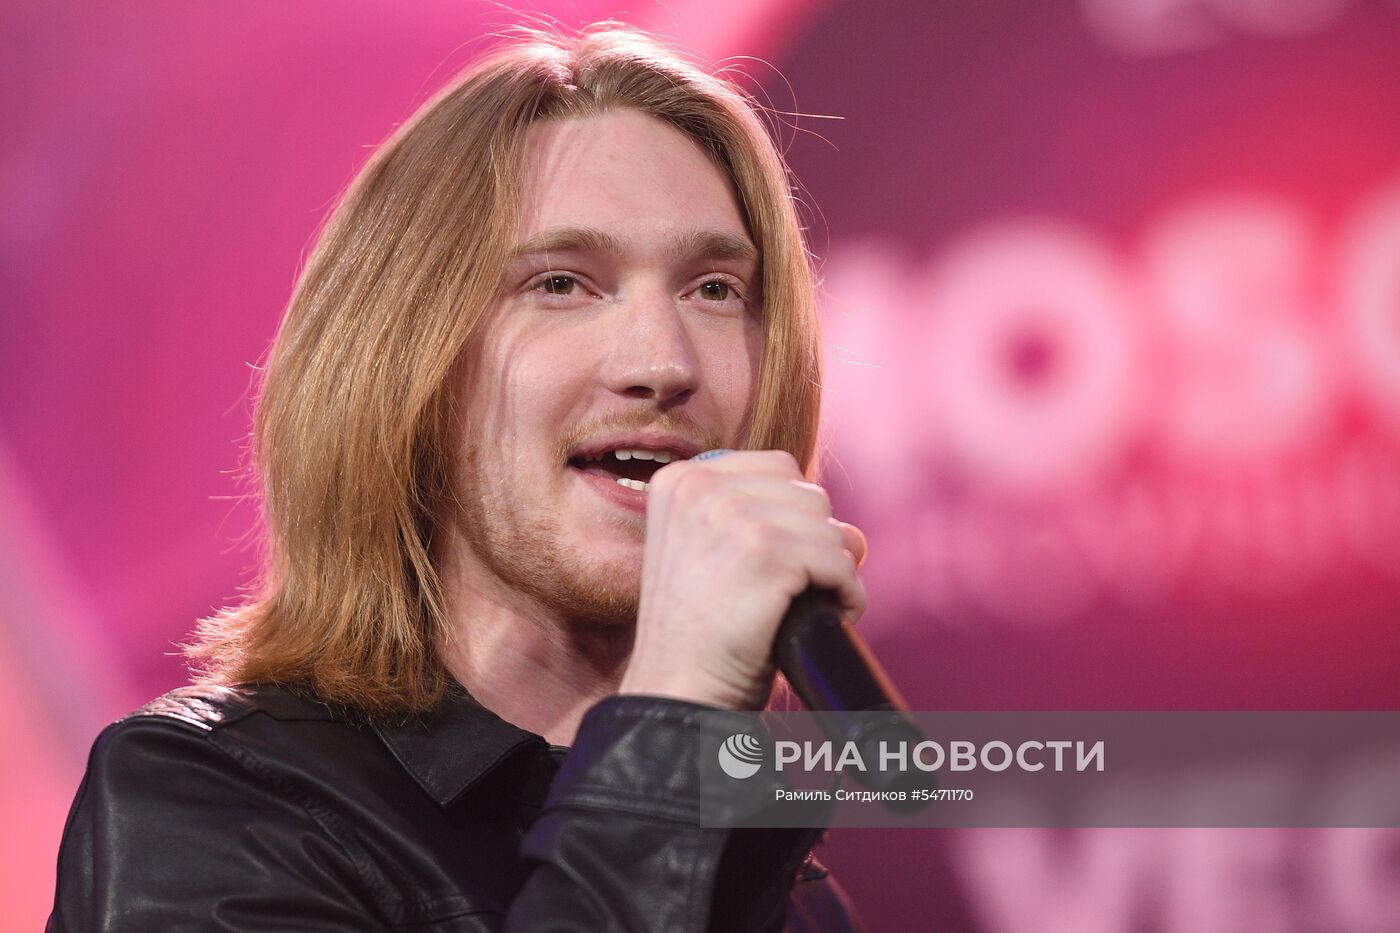 Российская pre-party конкурса "Евровидение-2018"